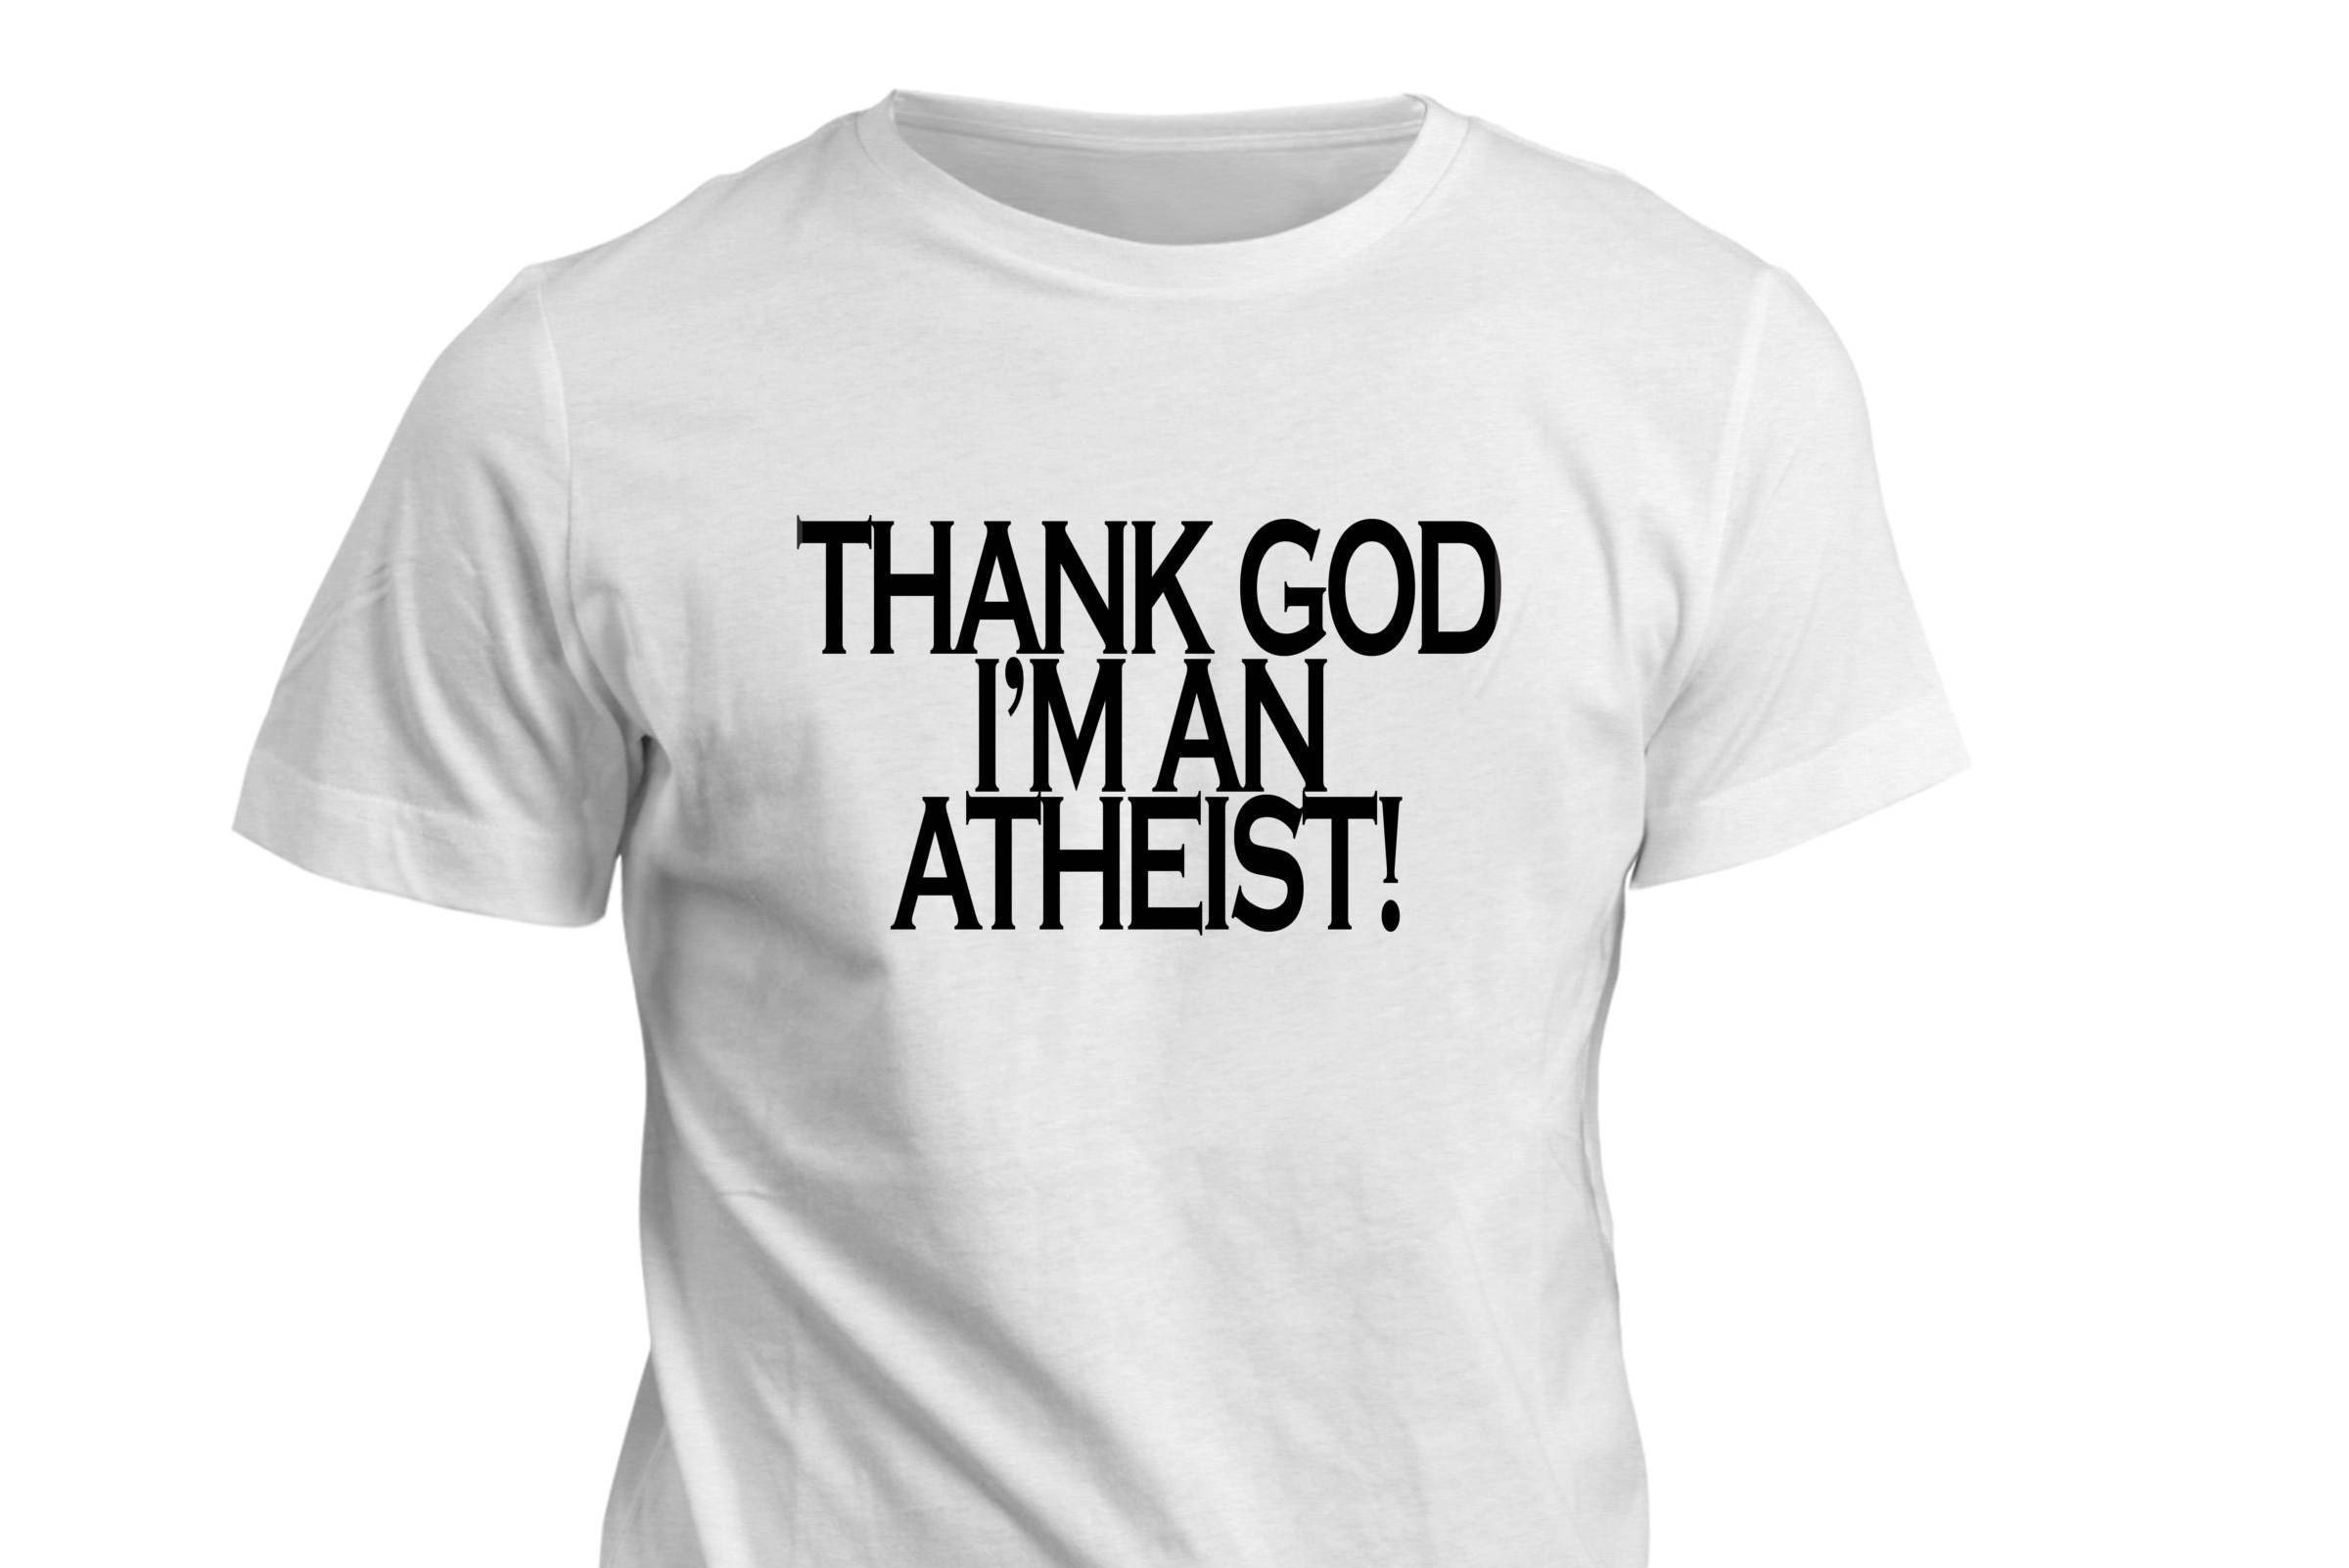 Atheist shirts atheism religious shirts christian t shirt